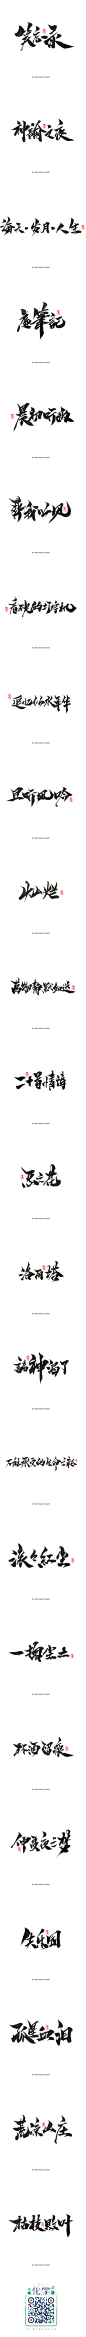 【灵度】手写书法字体 | 2016年终篇2_字体传奇-中国首个字体品牌设计师交流 #字体#